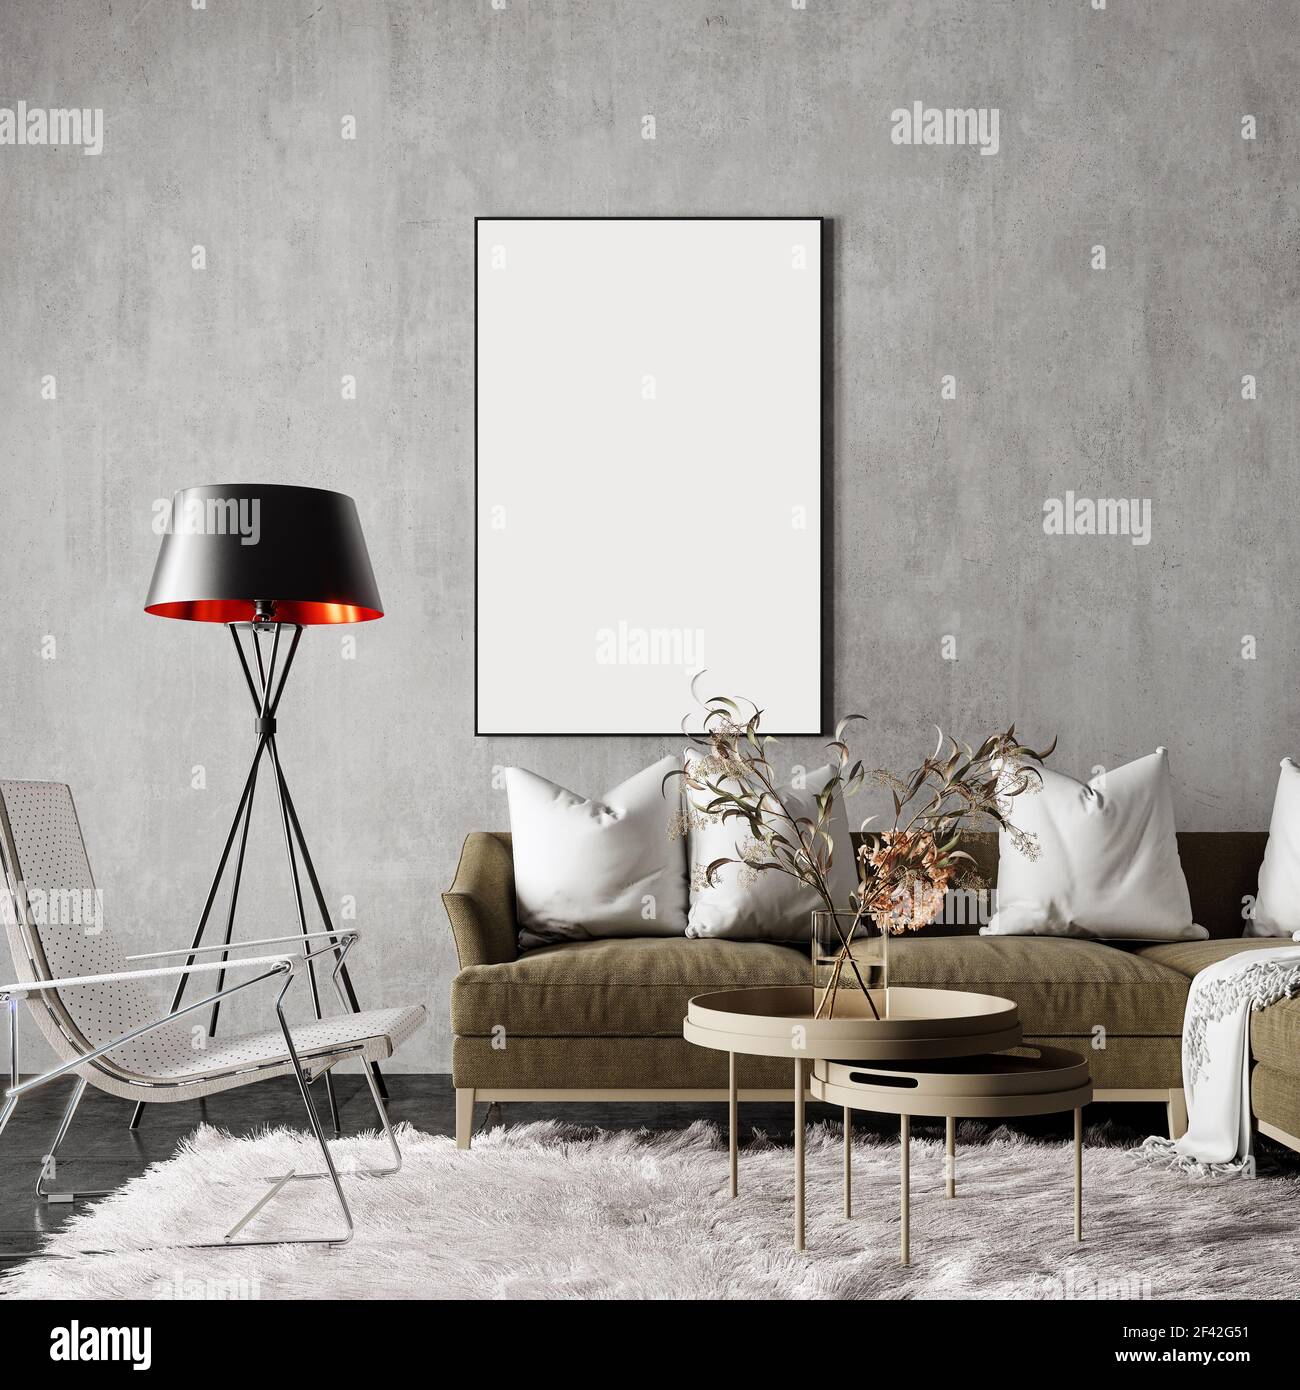 Interni dal design moderno con moquette bianca e cornice vuota sulla parete rendering 3D, illustrazione 3D Foto Stock